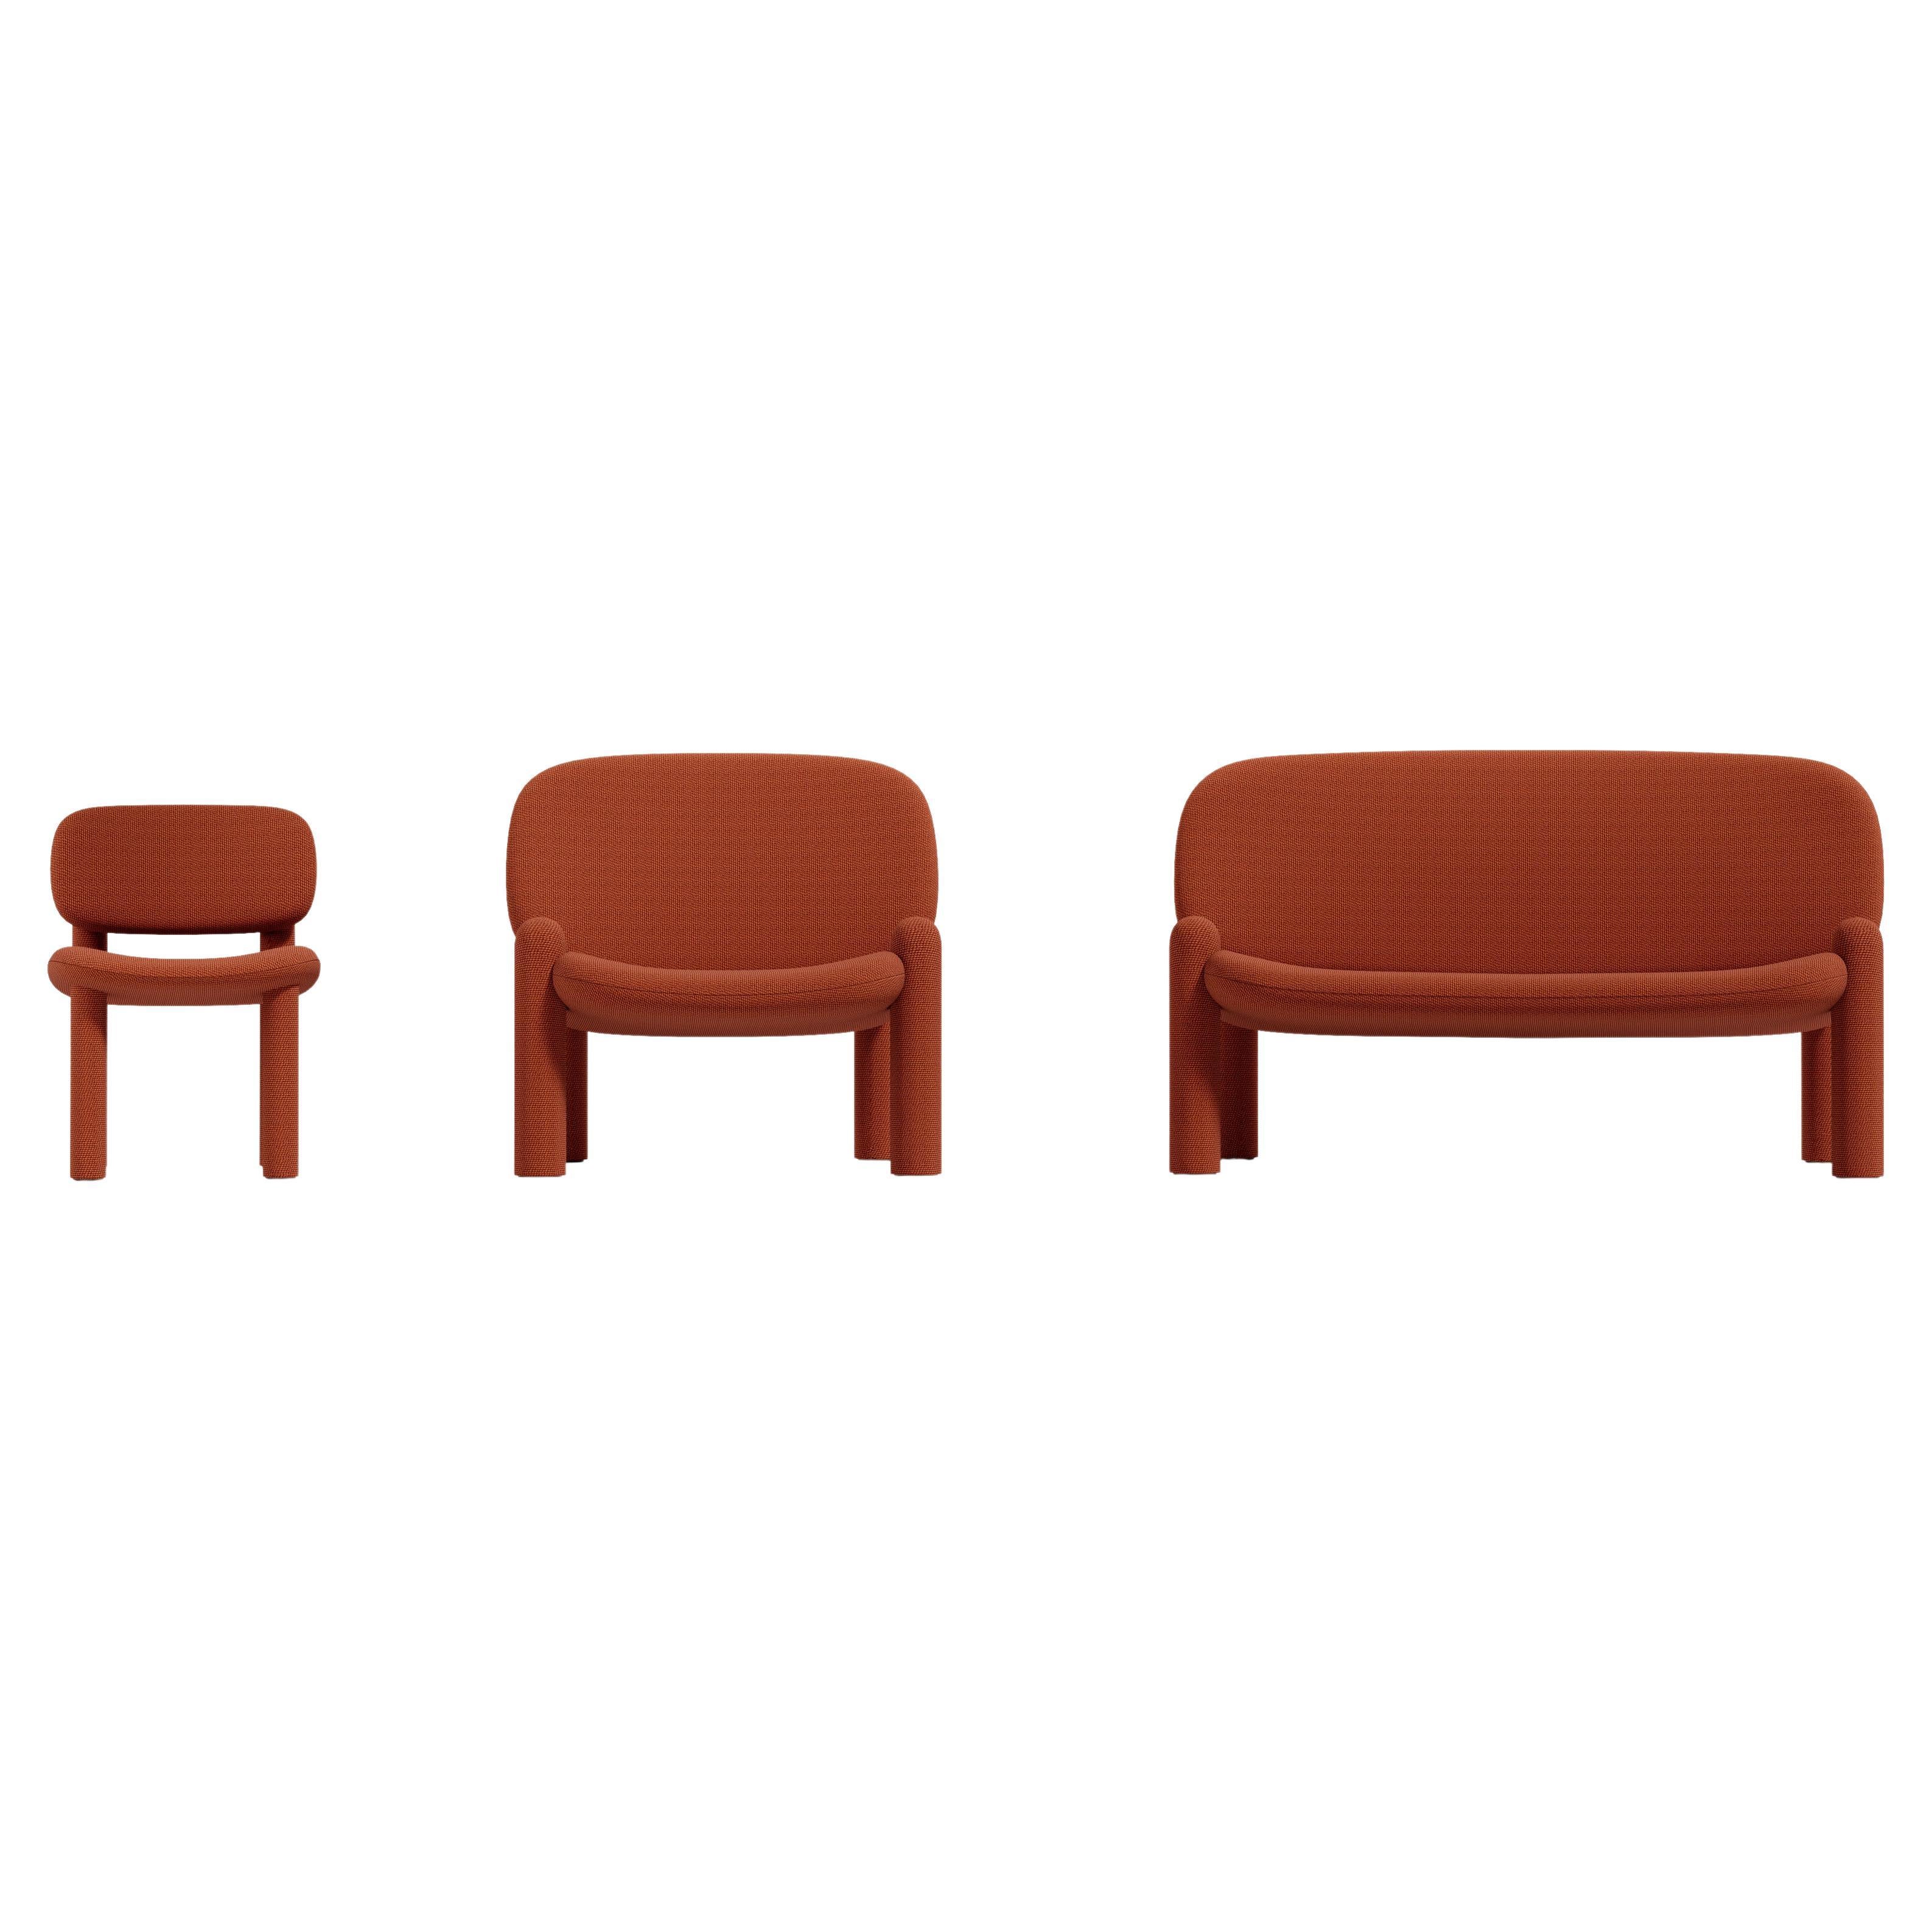 Tottori est une collection de sièges et de tables basses aux formes intemporelles, à la silhouette mignonne et au caractère audacieux. Appelée d'après le film d'animation japonais 